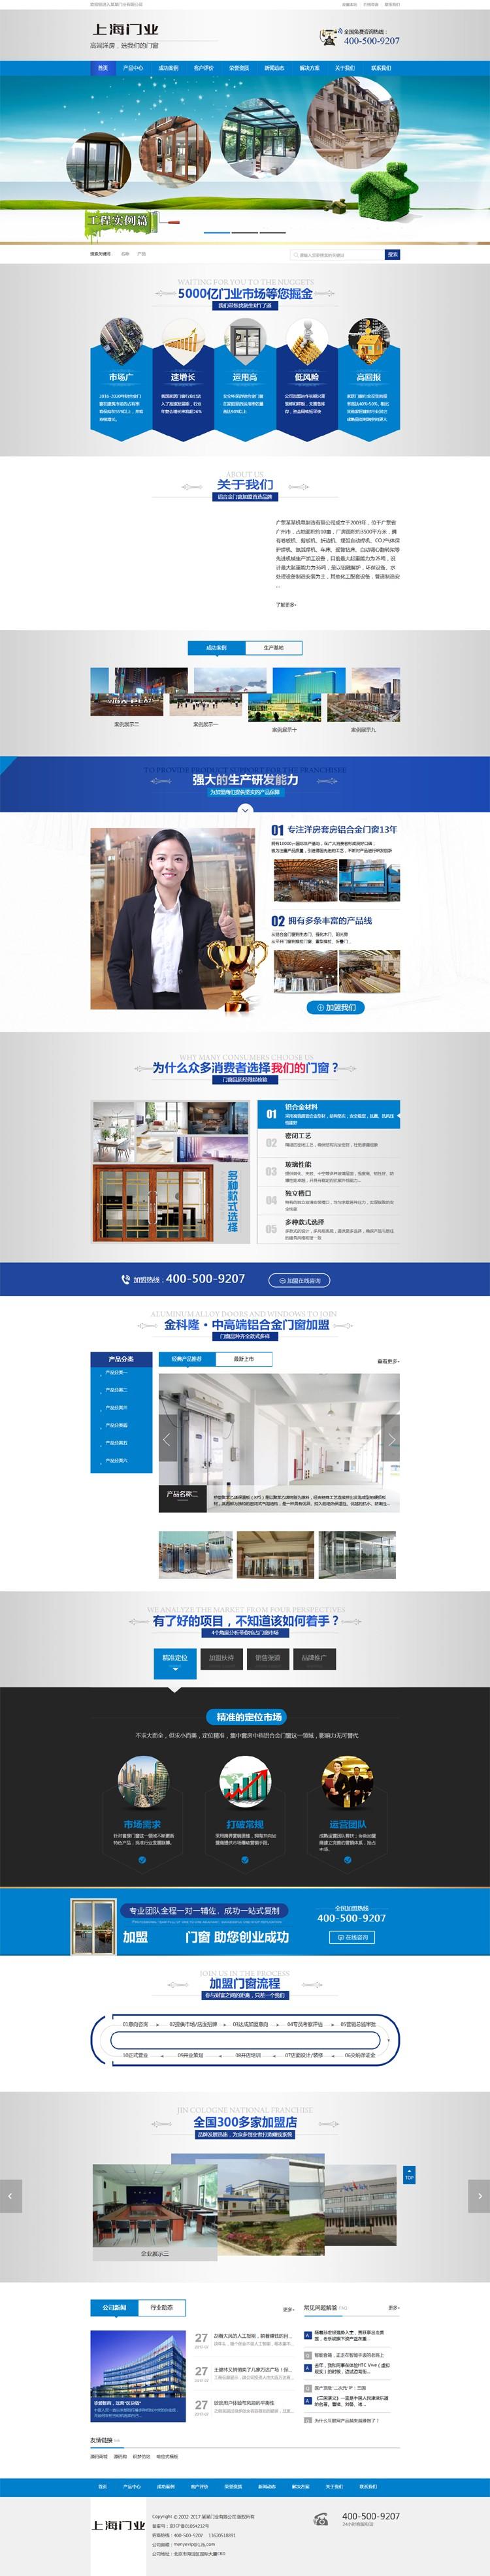 【亲测】最新营销型木材铝合金门窗门业企业网站模板 织梦模板源码